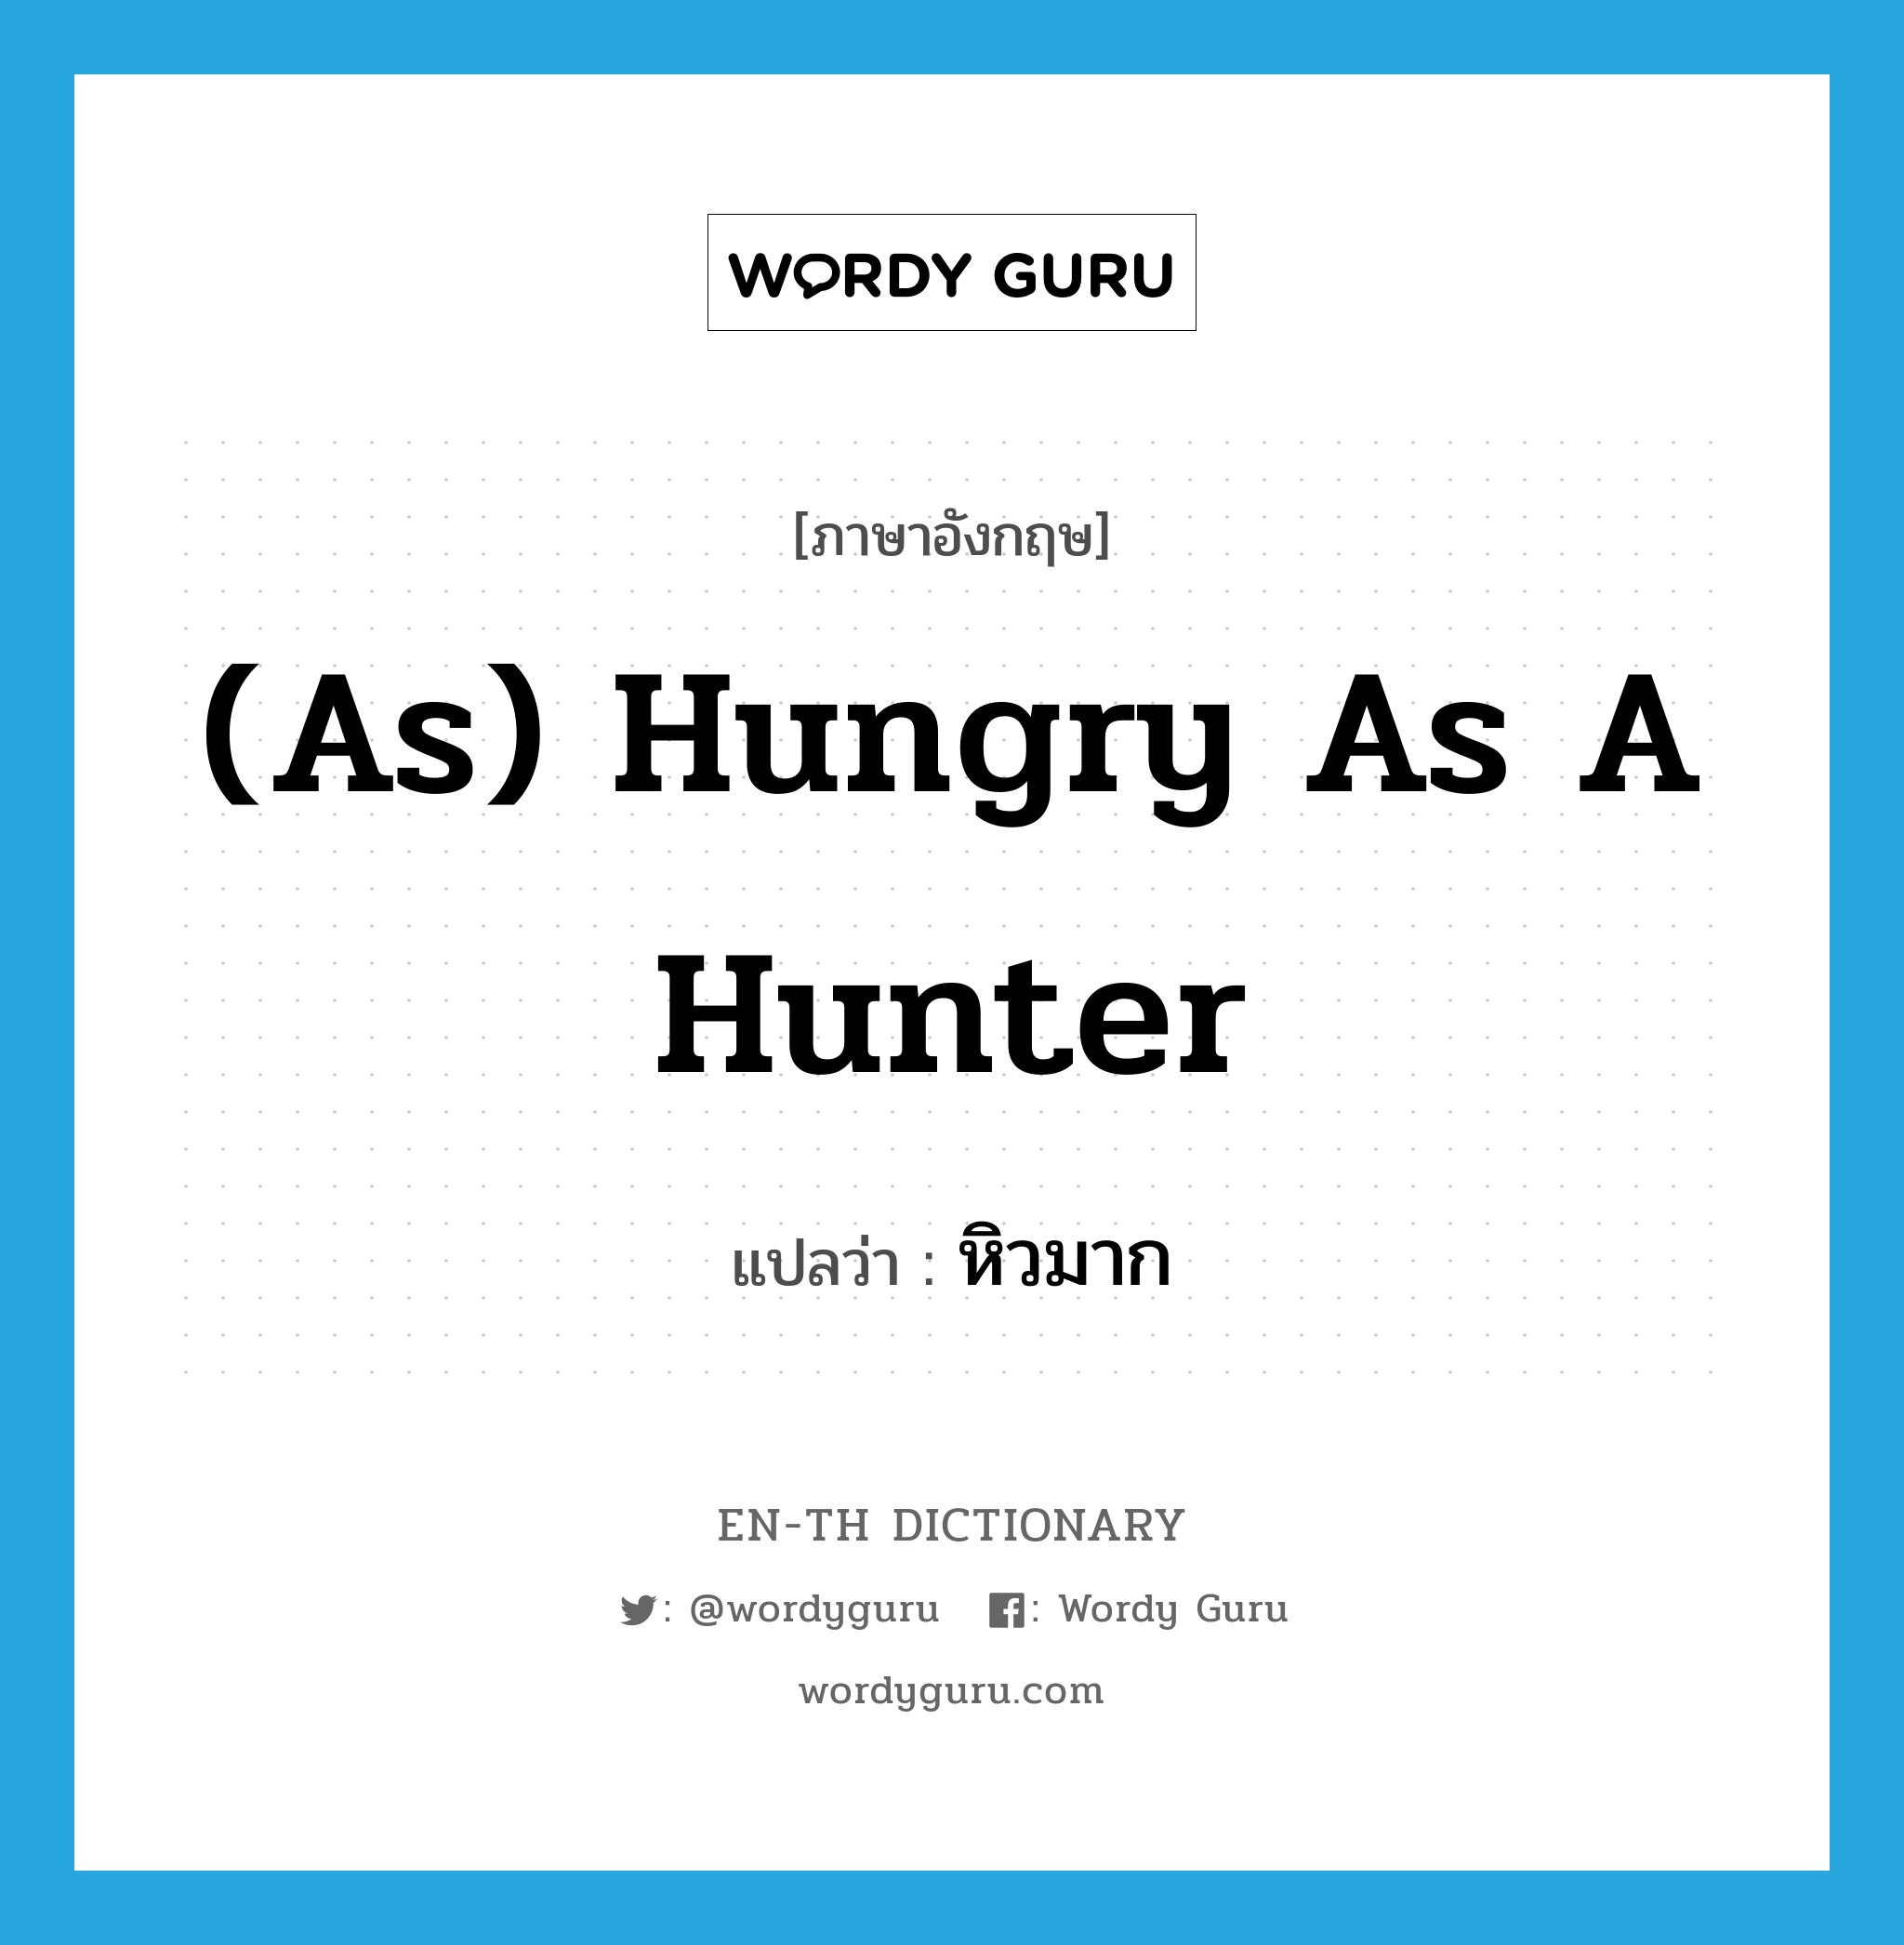 หิวมาก ภาษาอังกฤษ?, คำศัพท์ภาษาอังกฤษ หิวมาก แปลว่า (as) hungry as a hunter ประเภท IDM หมวด IDM